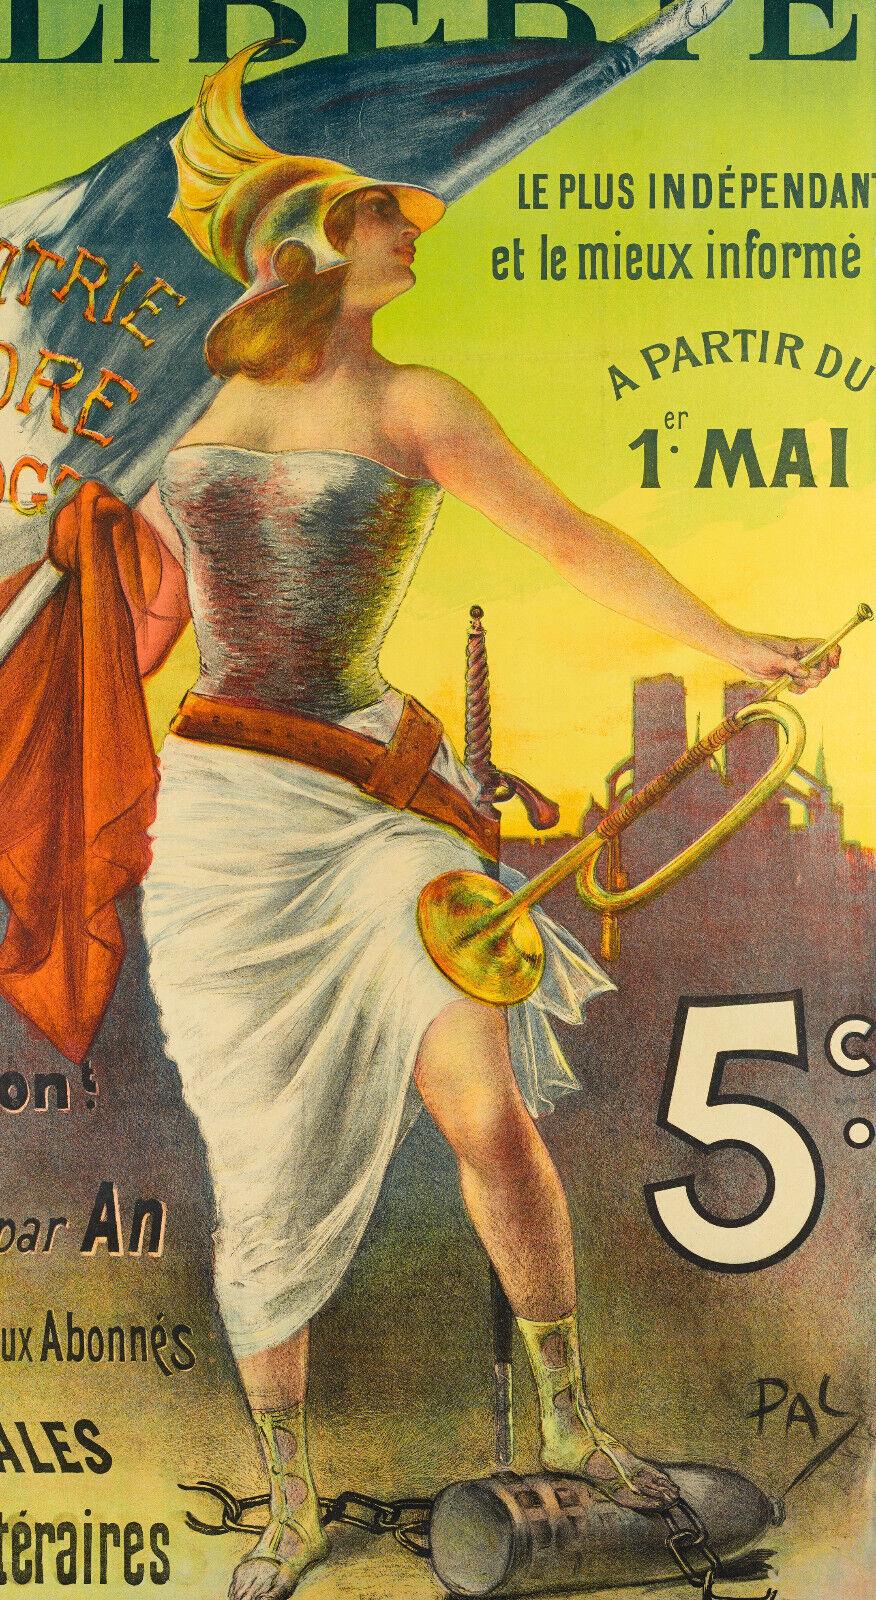 Belle Époque Original Vintage Poster-Pal-La Freedom Paris-Sword-Journal, 1890